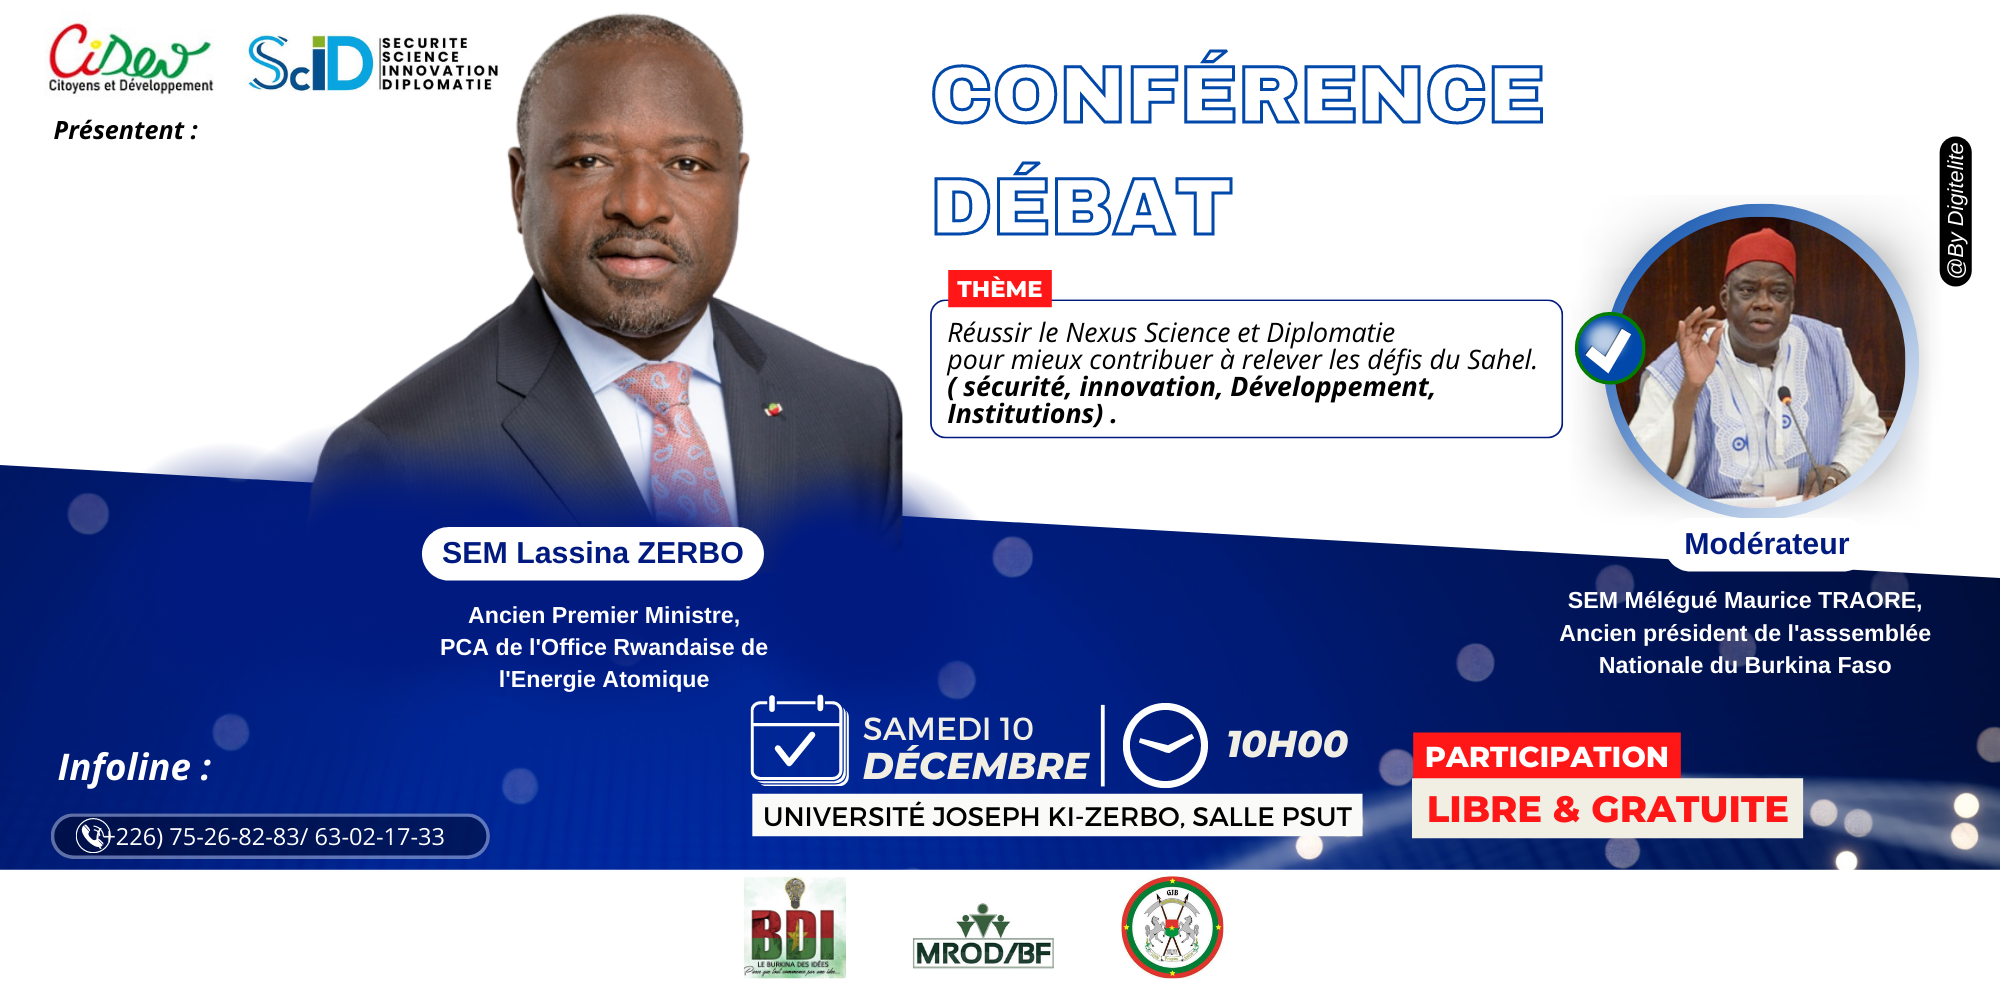 Conférence-débat : Réussir le Nexus Science et Diplomatie pour mieux contribuer à relever les défis du Sahel.